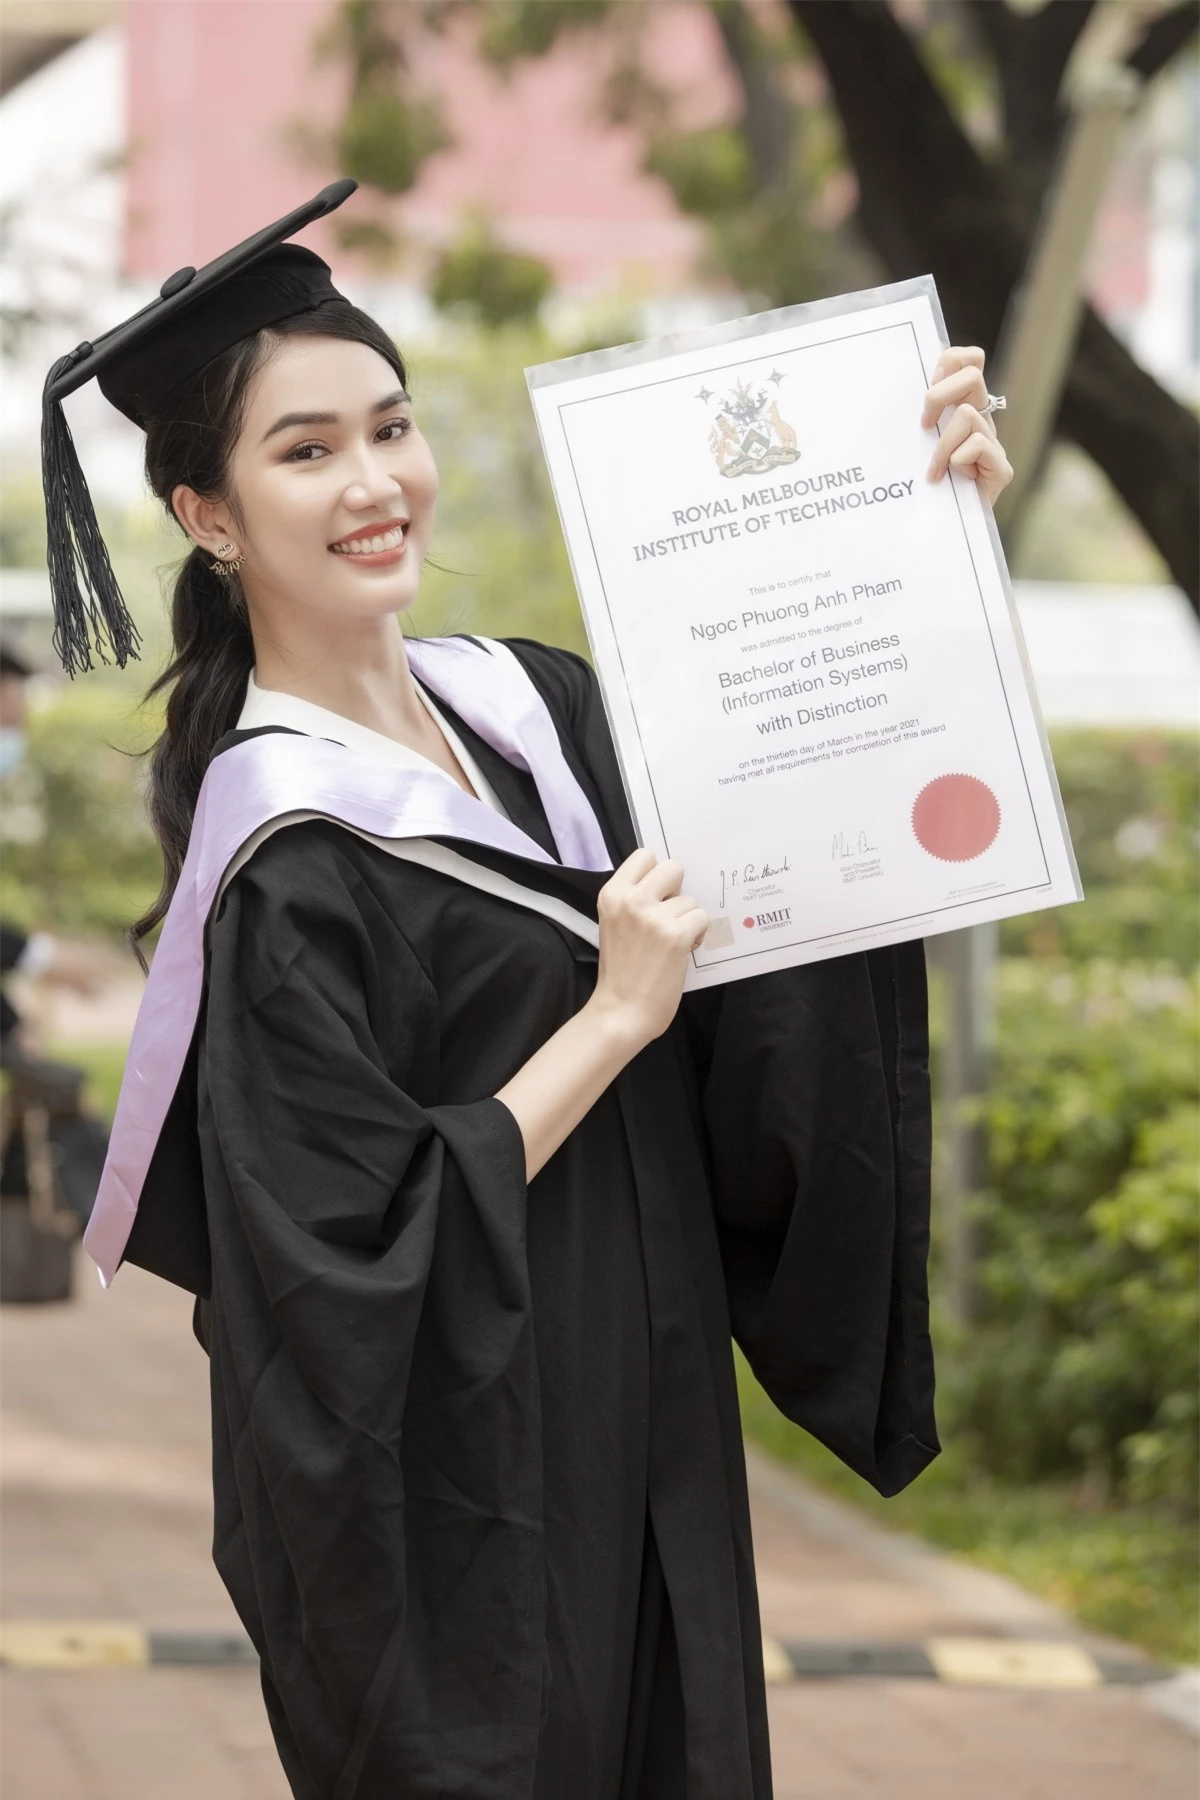 Trước đây, Phương Anh đã từng đậu thủ khoa khối song ngữ Trường THPT chuyên Lê Hồng Phong TP.HCM. Cô còn đạt giải ba Học sinh giỏi Quốc gia môn tiếng Pháp năm 2016 cũng như được tuyển thẳng vào Đại học Ngoại thương Hà Nội và Đại học Bách Khoa TP.HCM.